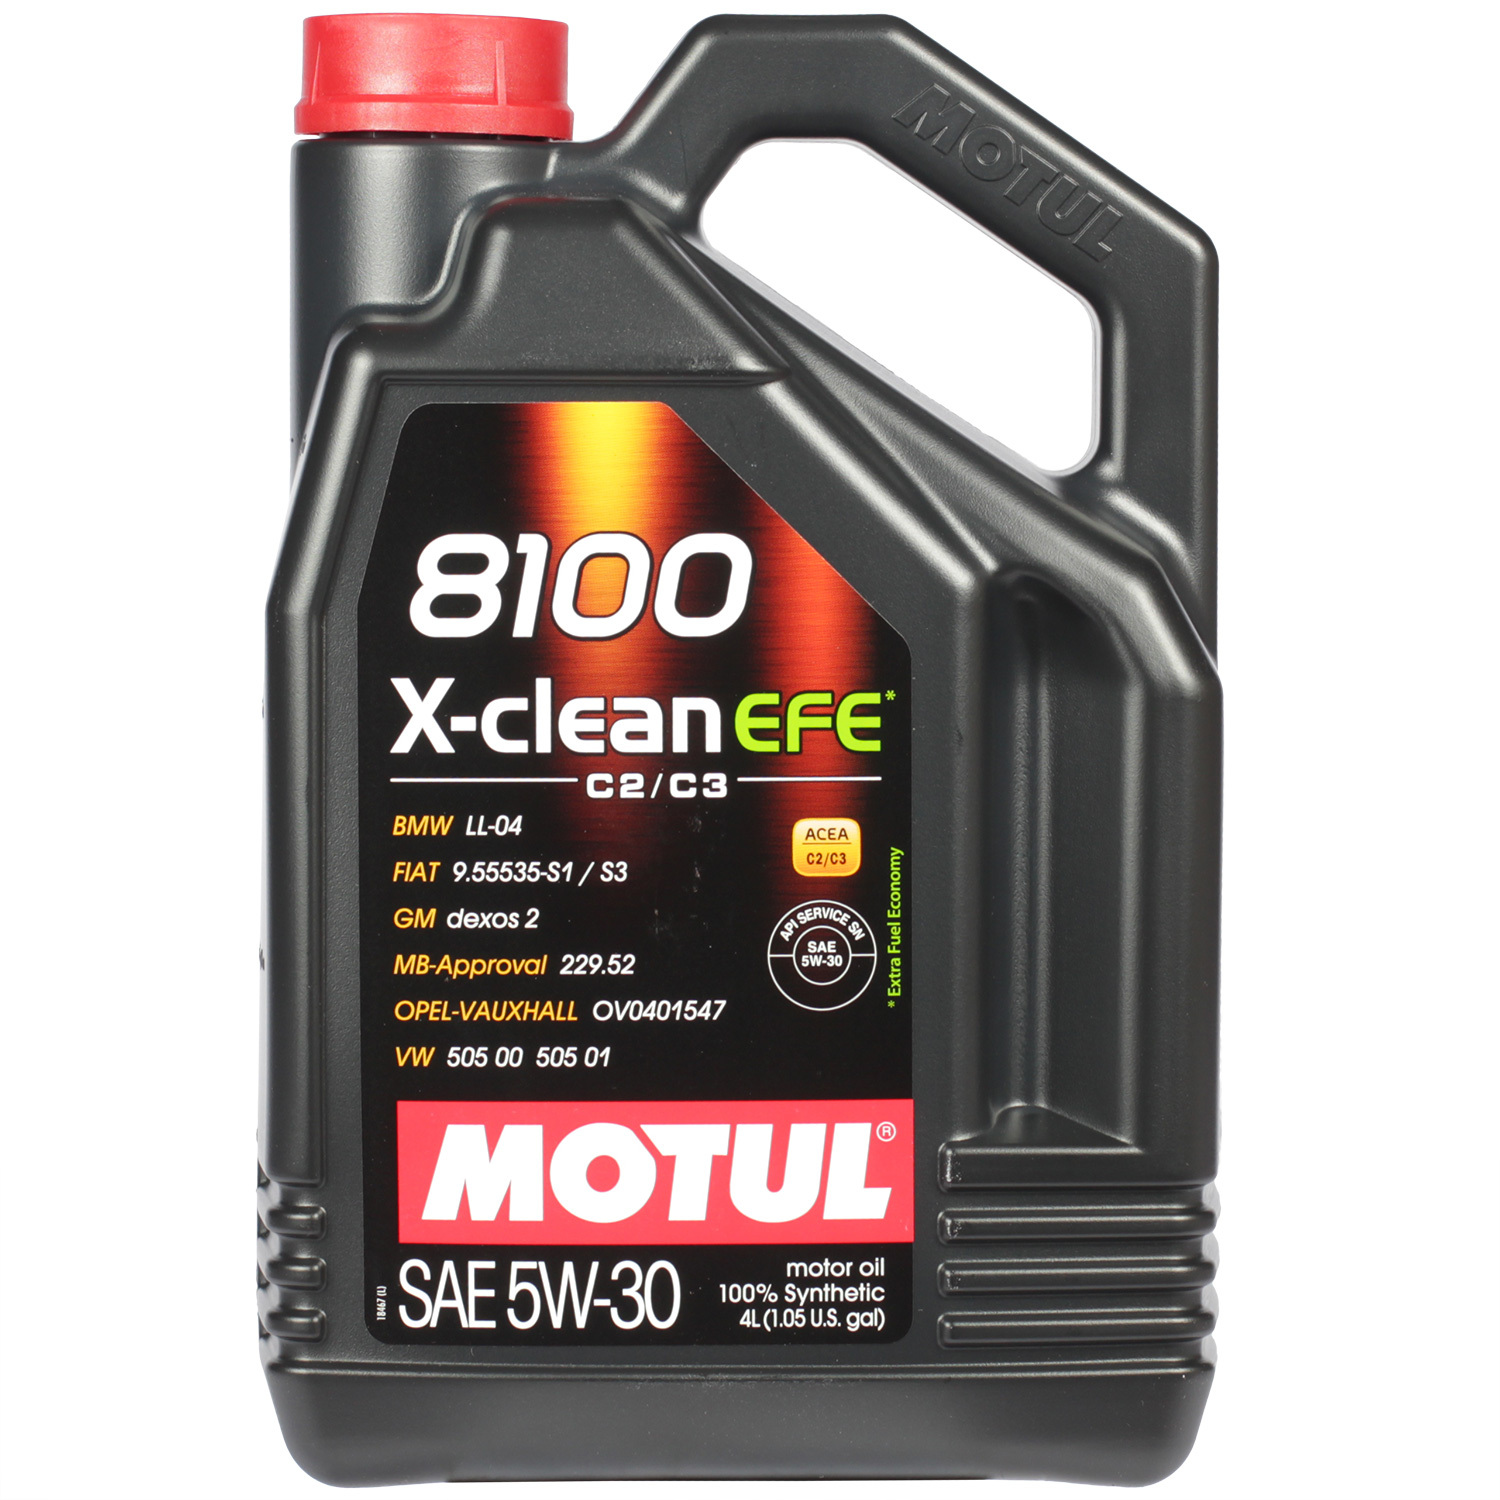 Motul Моторное масло Motul 8100 X-clean EFE 5W-30, 4 л motul моторное масло motul 8100 eco nergy 5w 30 5 л